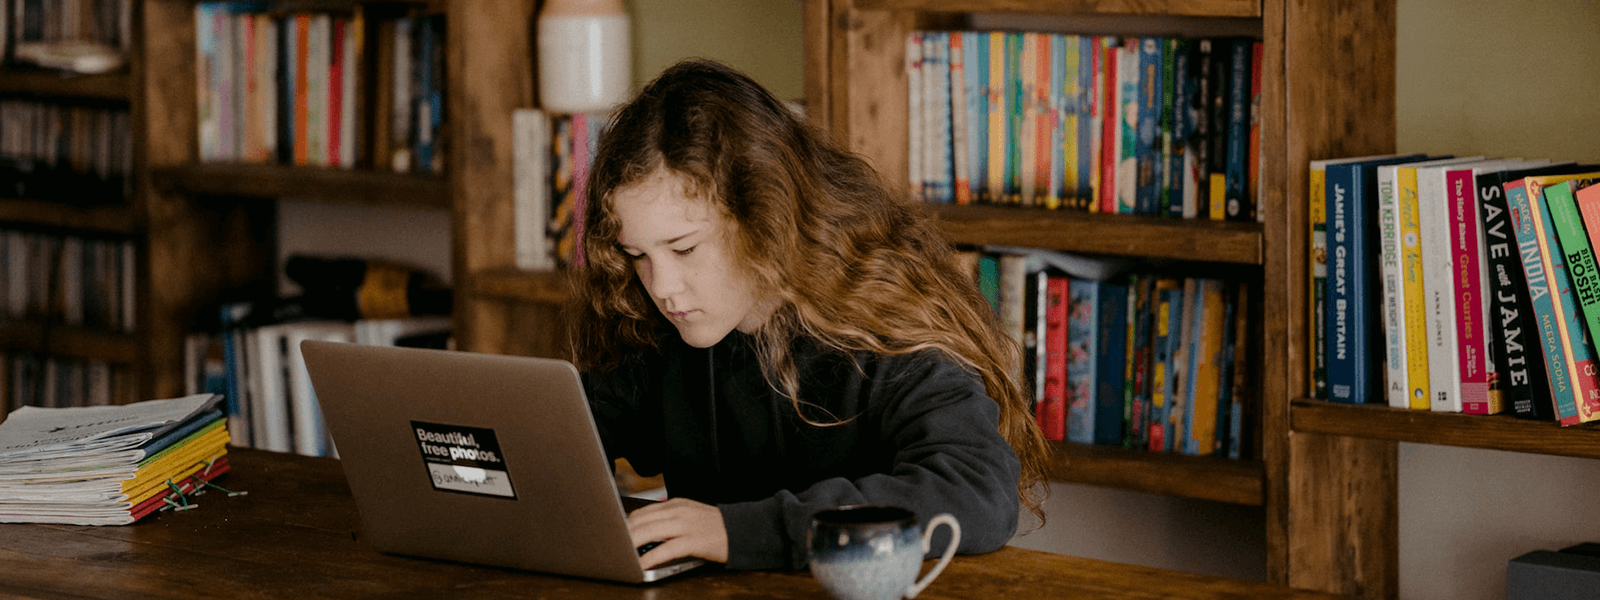 dziewczyna siedząca przy komputerze w bibliotece